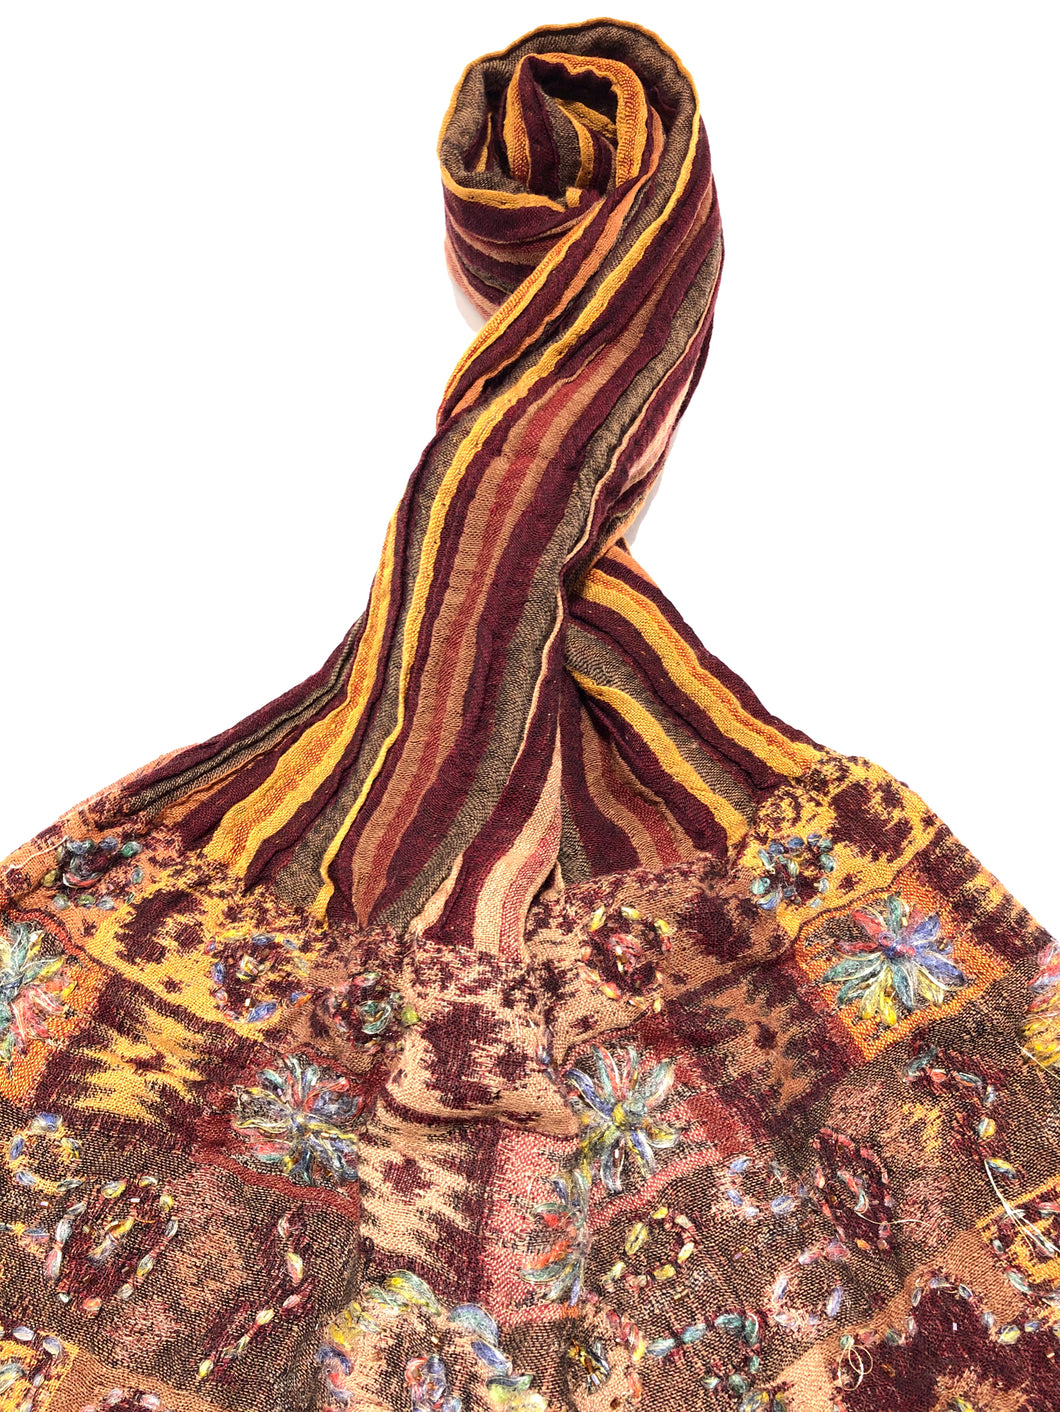 100% Wool Jacquard Embellished Pashmina Shawl ref-rflghwj0005